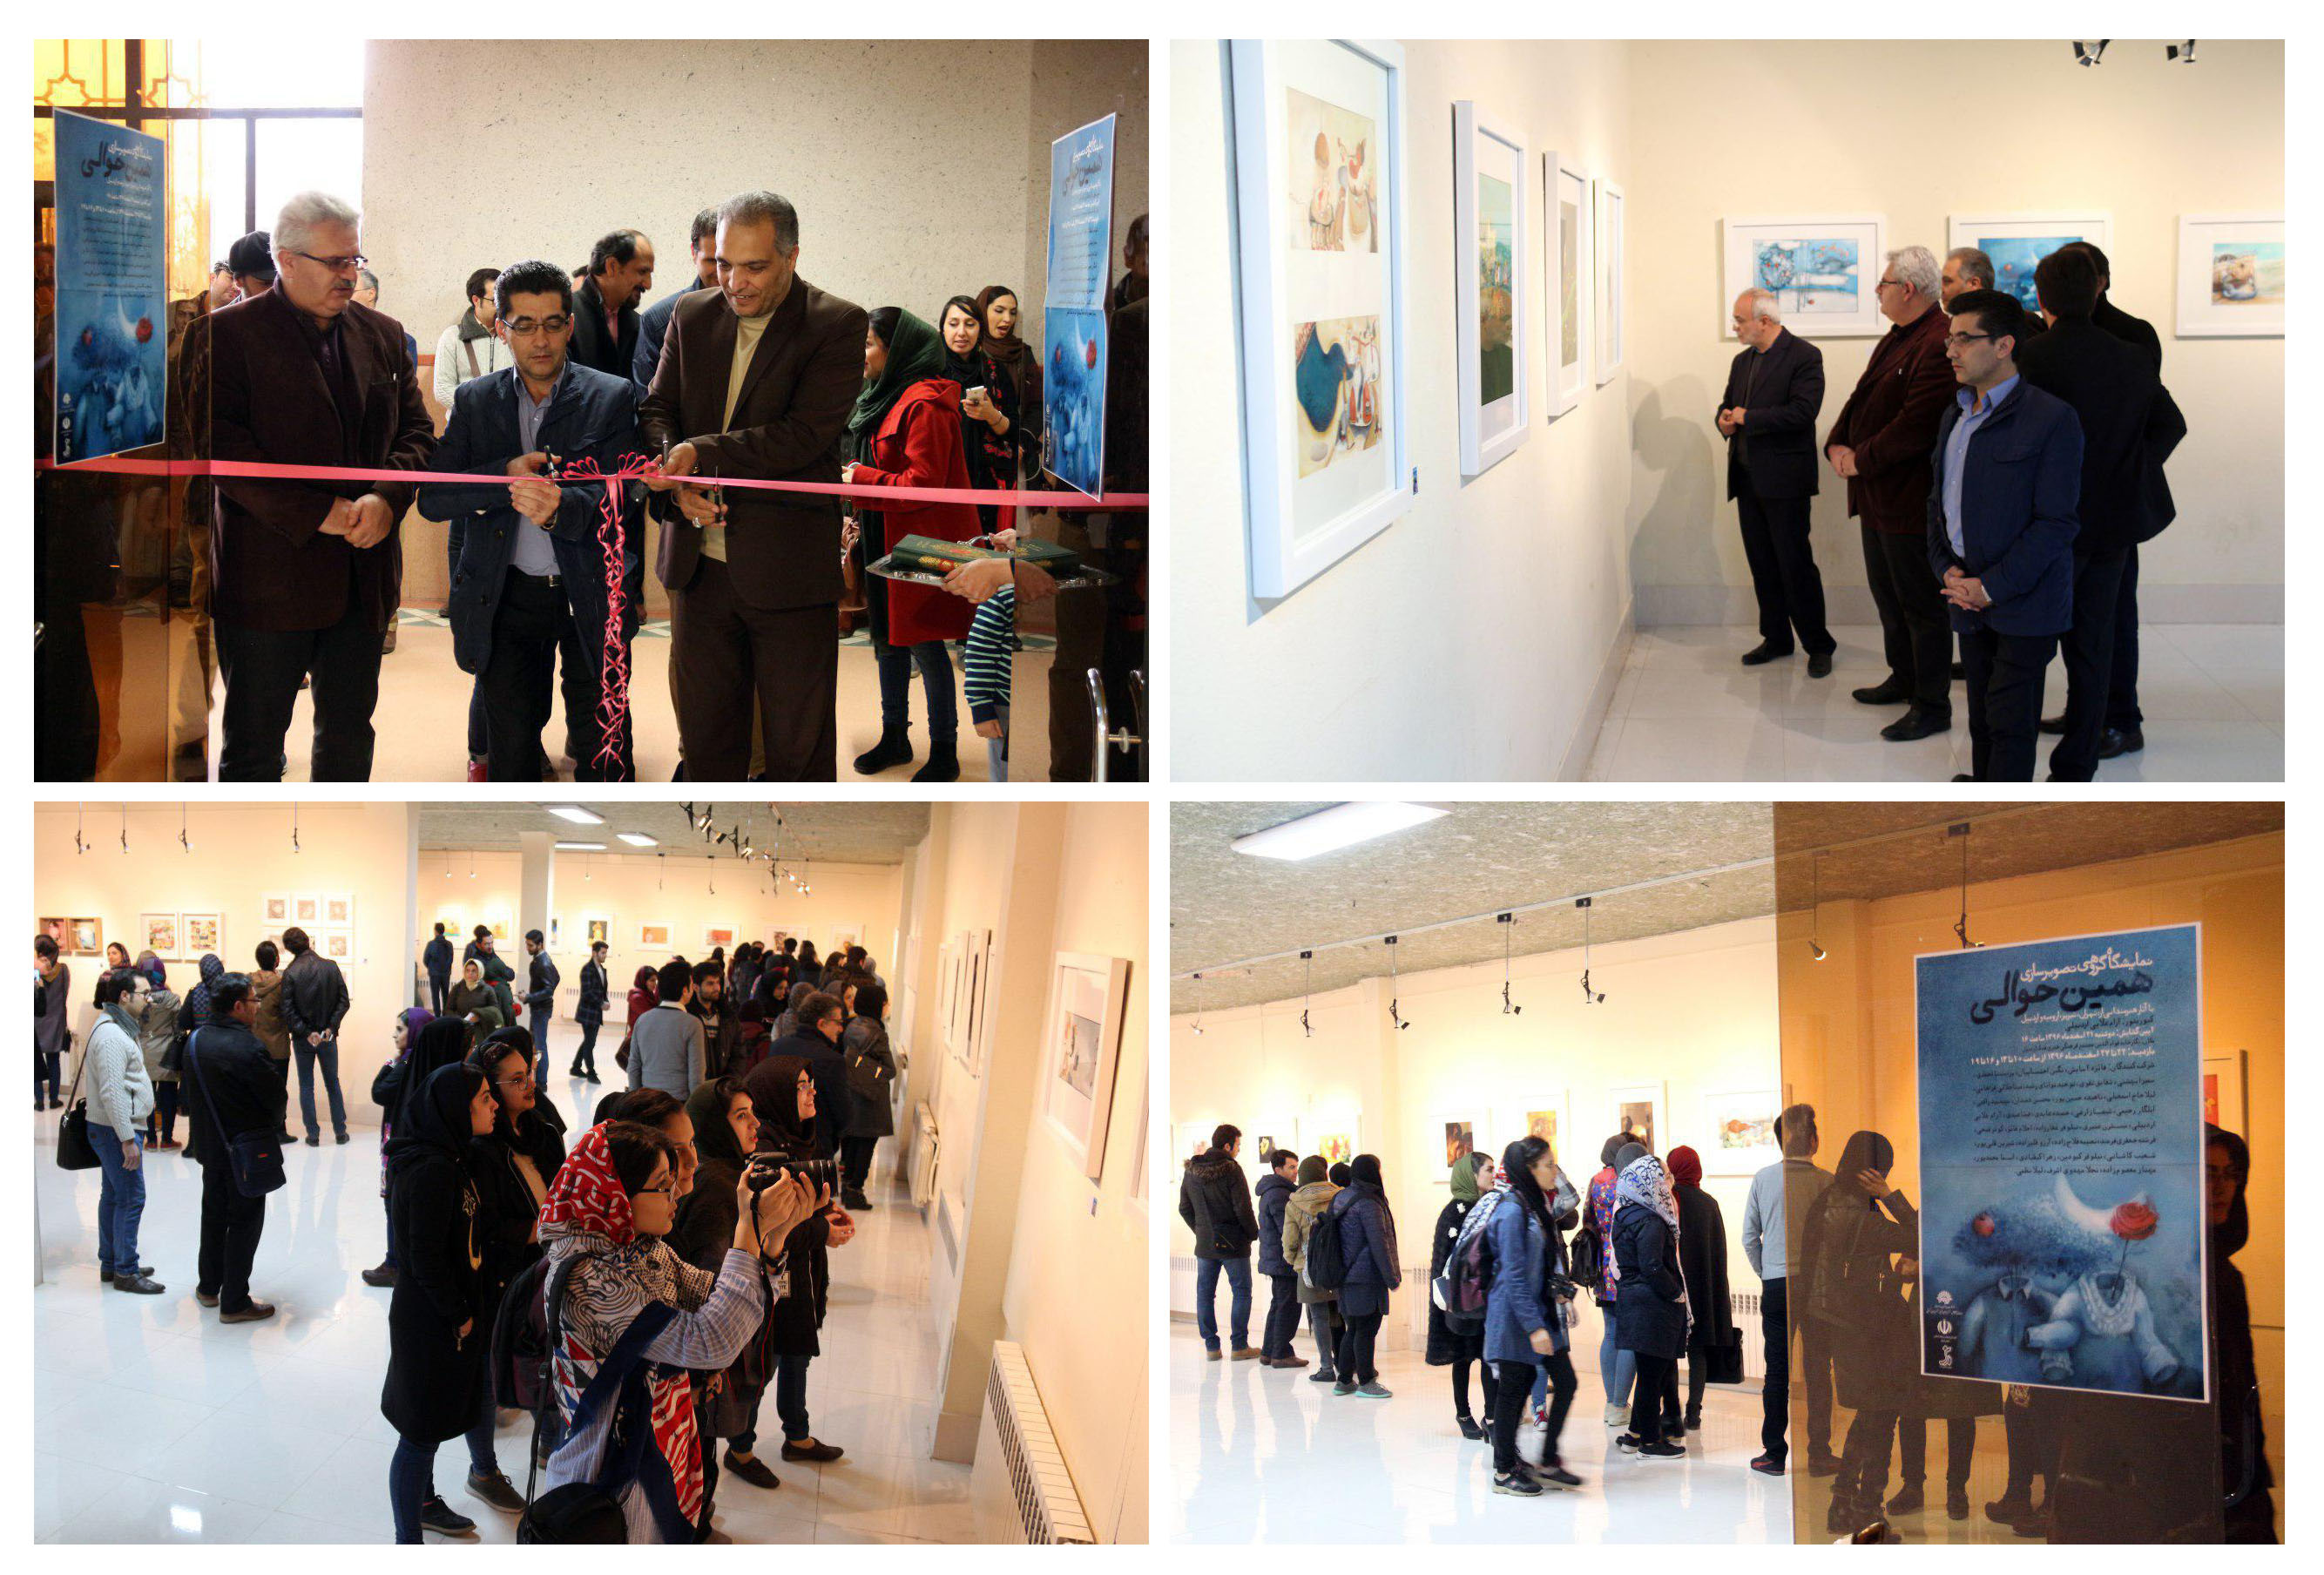 گزارش تصویری نخستین نمایشگاه گروهی تصویرسازی در نگارخانه قوام الدین مجتمع فرهنگی هنری فدک اردبیل